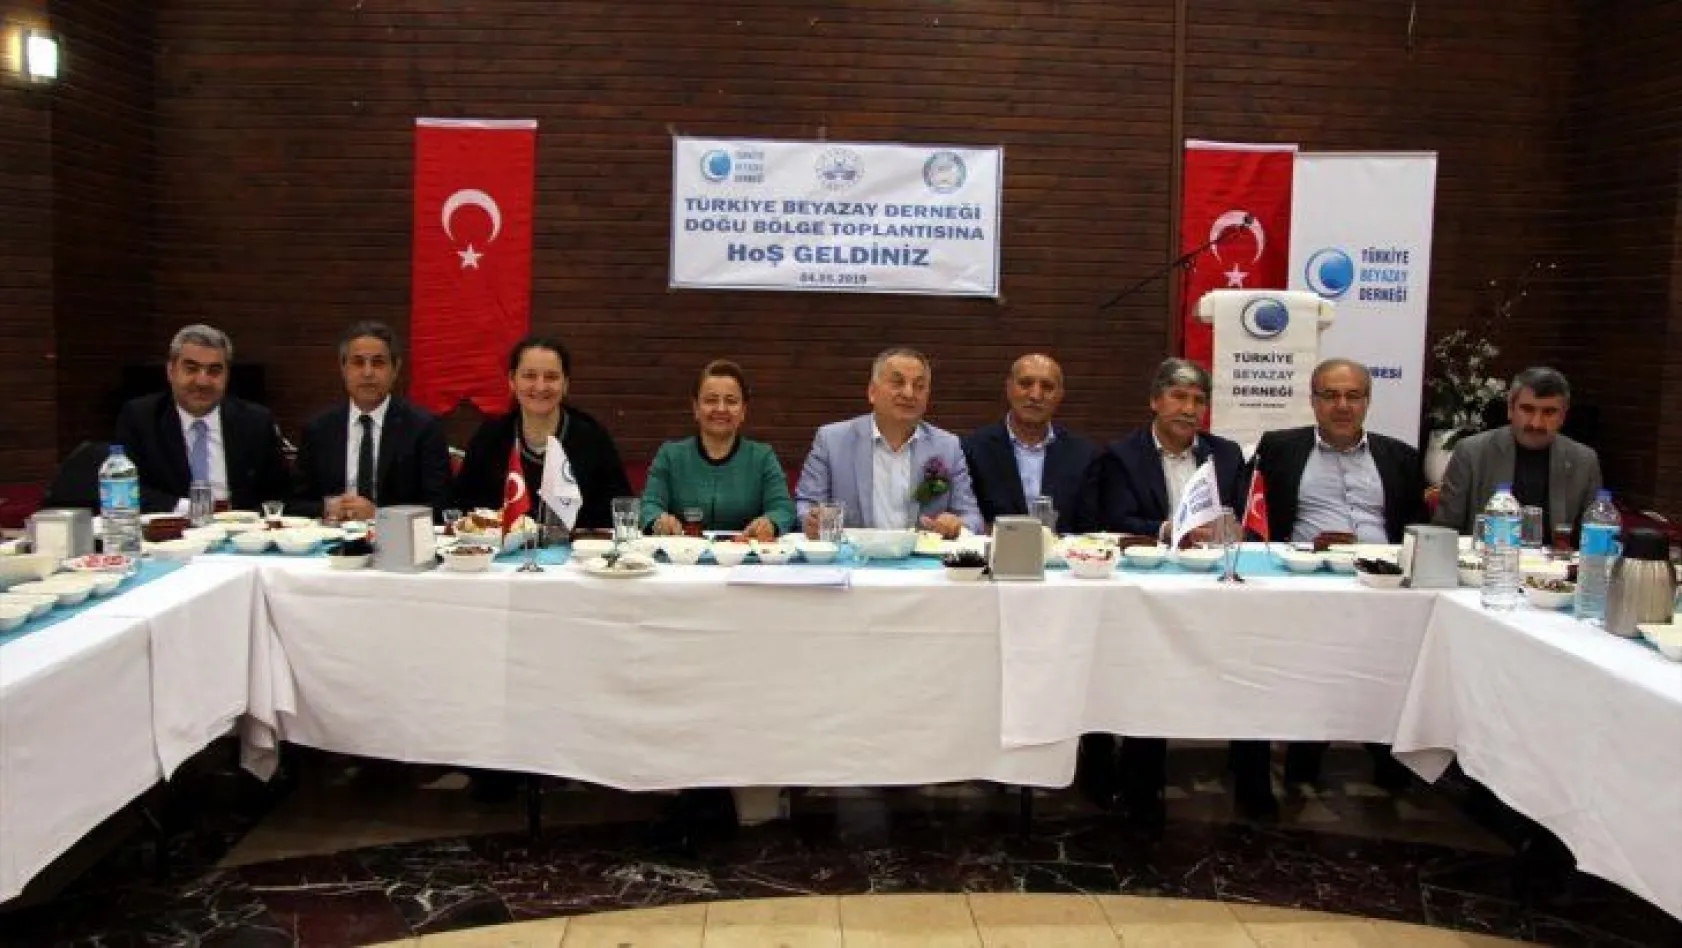 Türkiye Beyazay Derneği Doğu Bölge Toplantısı